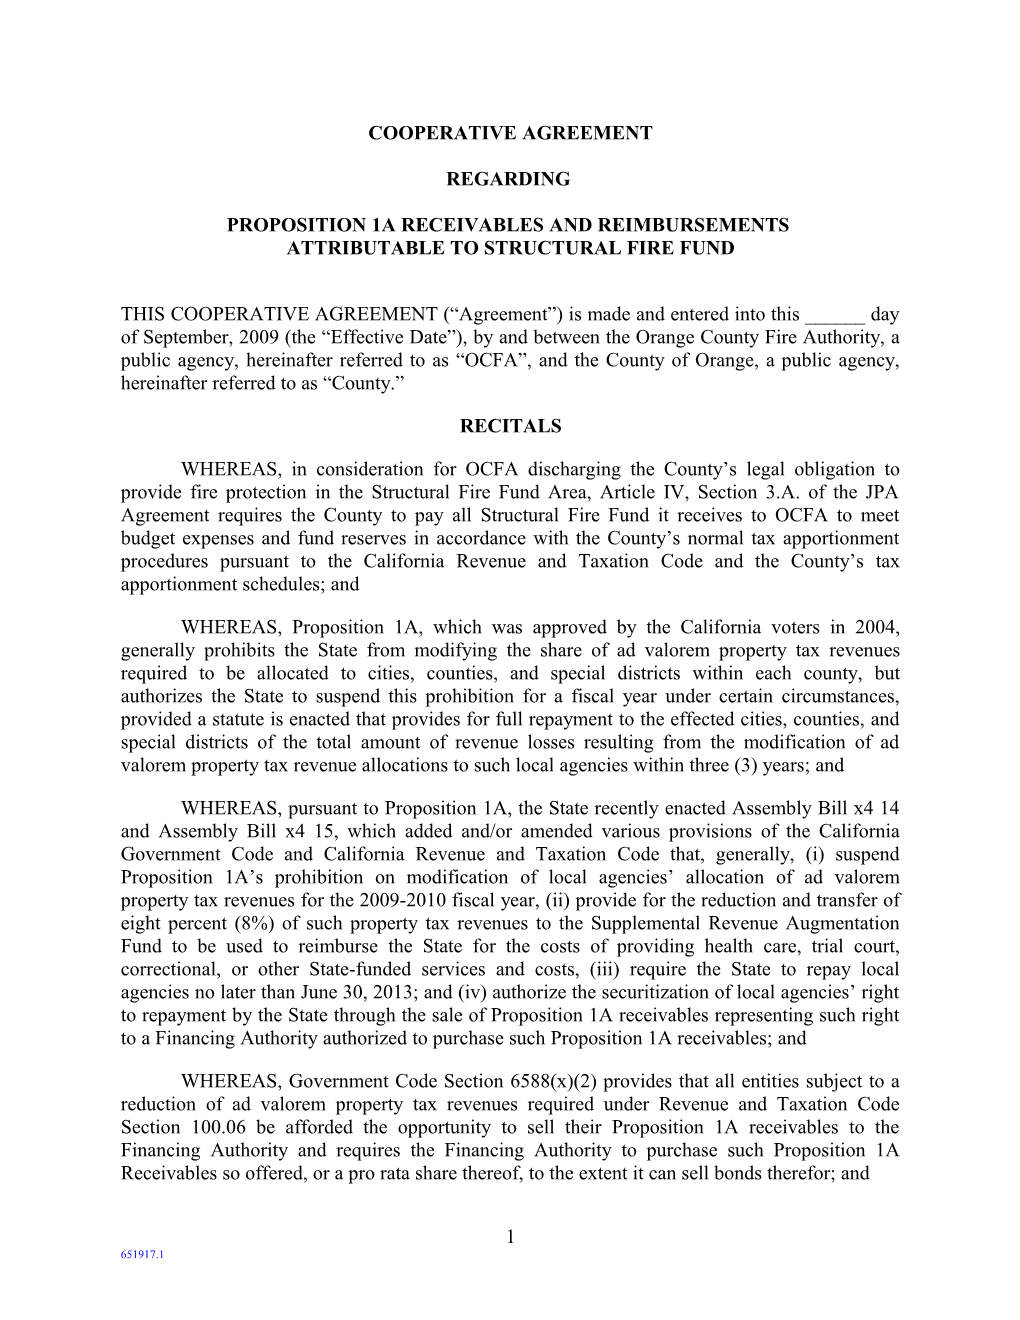 Agreement Regarding Proposition 1A Receivables